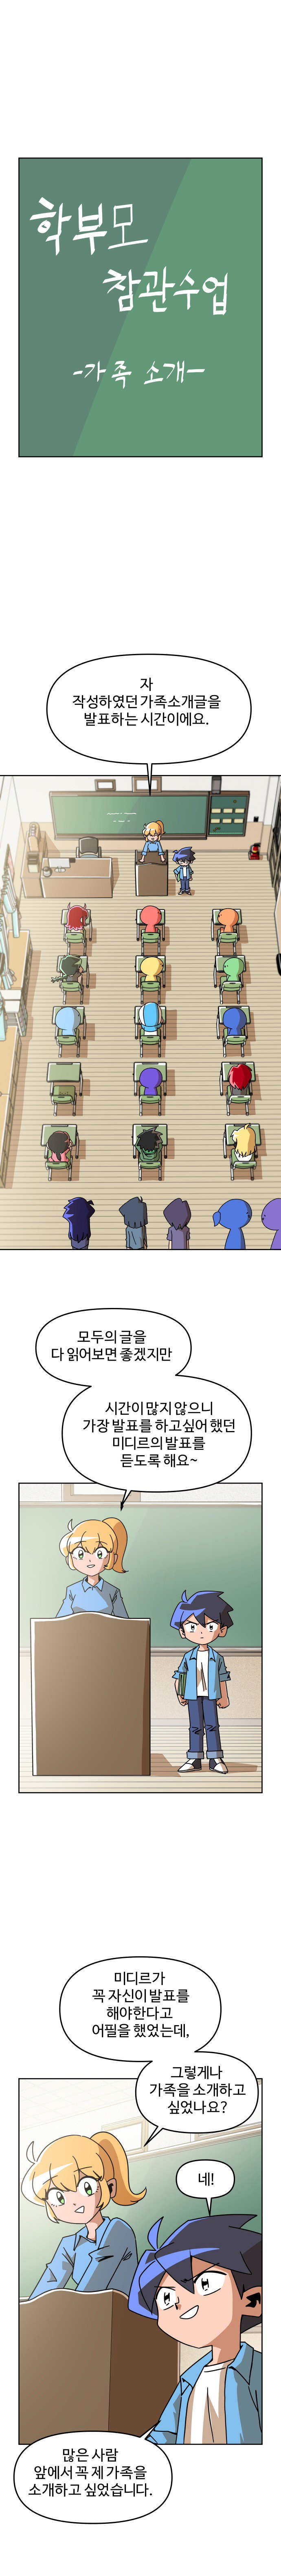 학교에서 가족소개하는 만화.manhwa